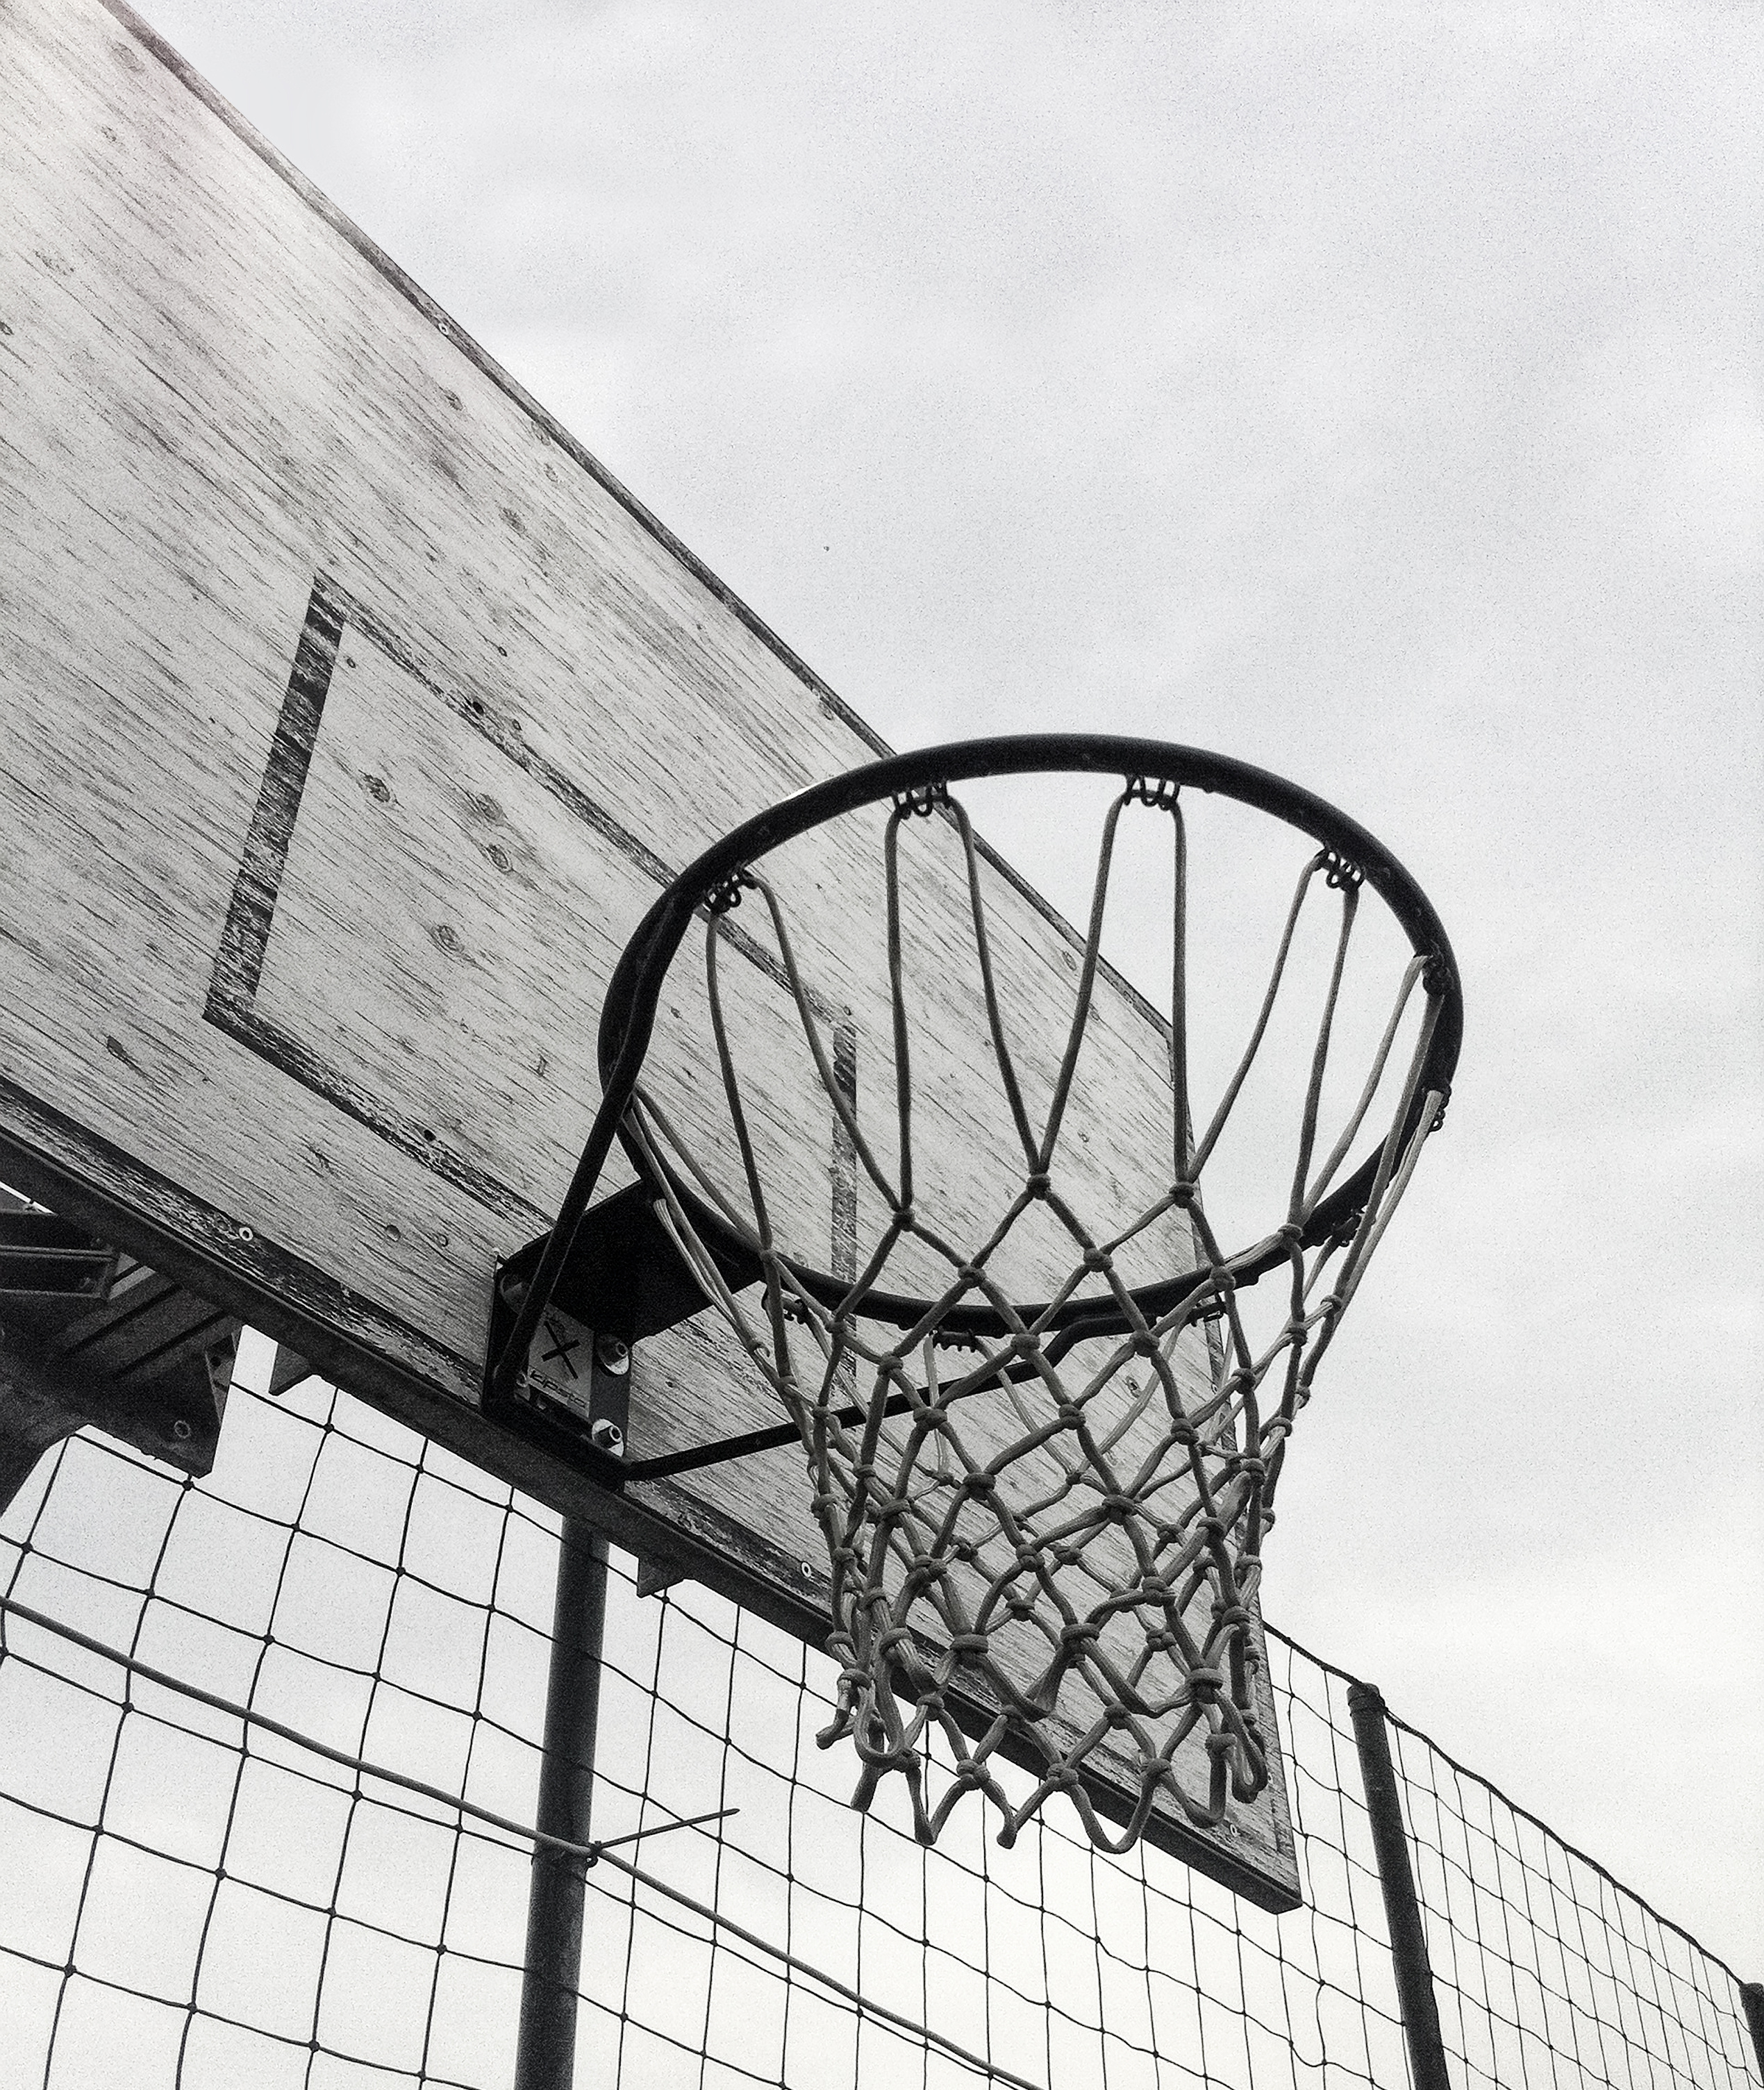 Grayscale Photography of Basketball Hoop